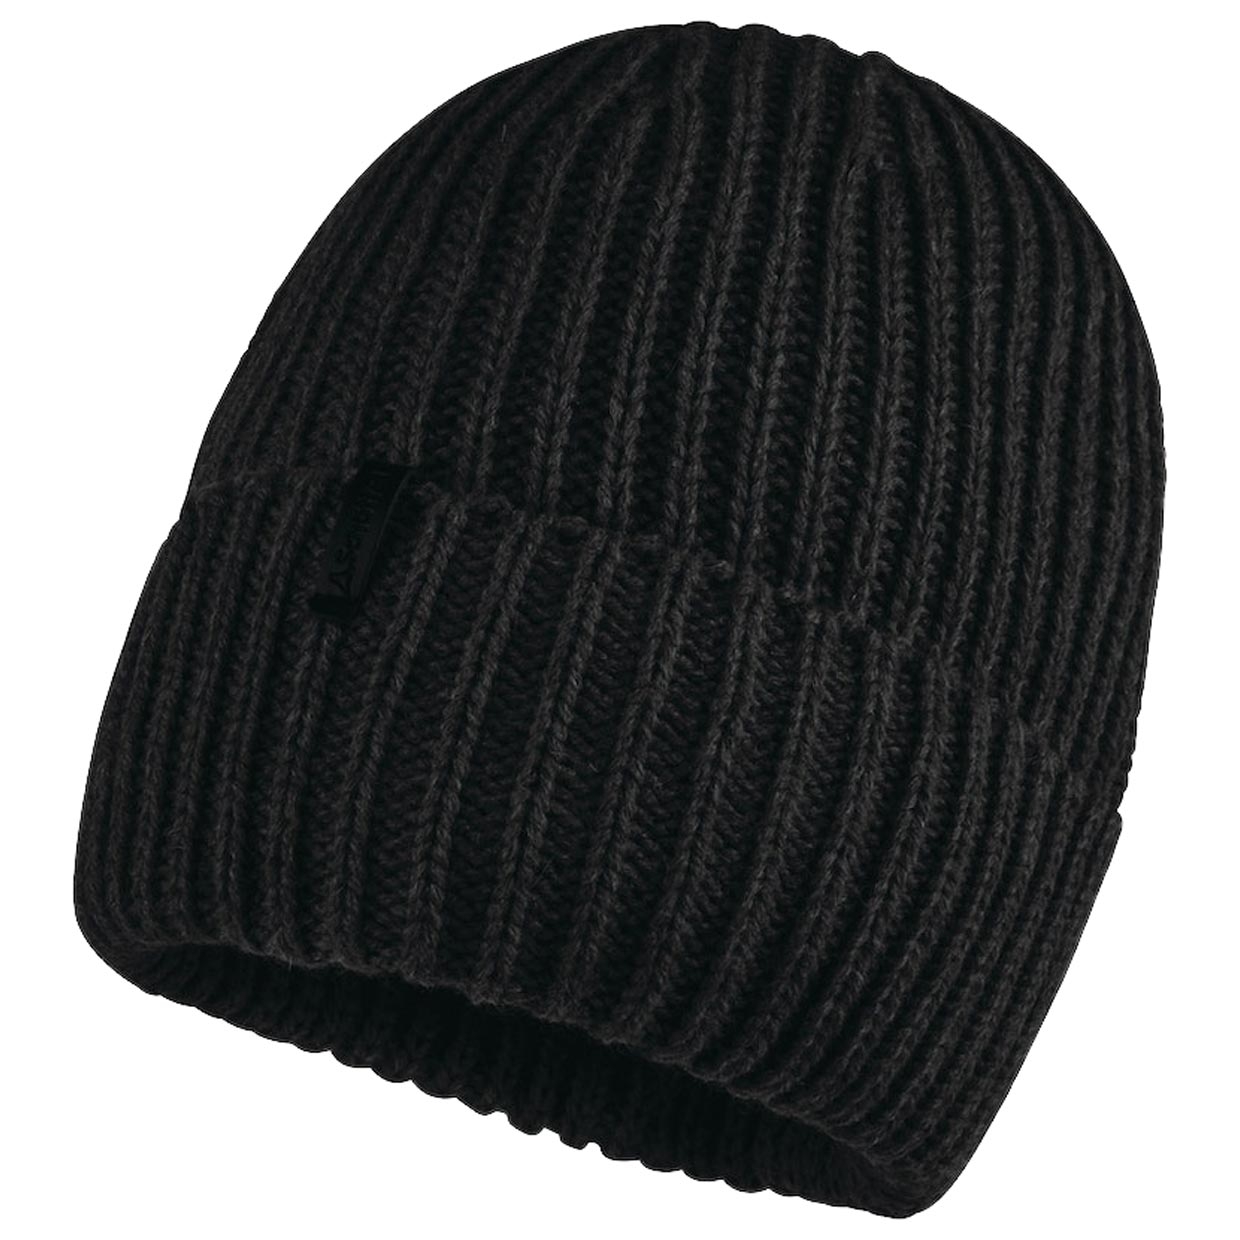 Strickmütze Knitted Hat Medford